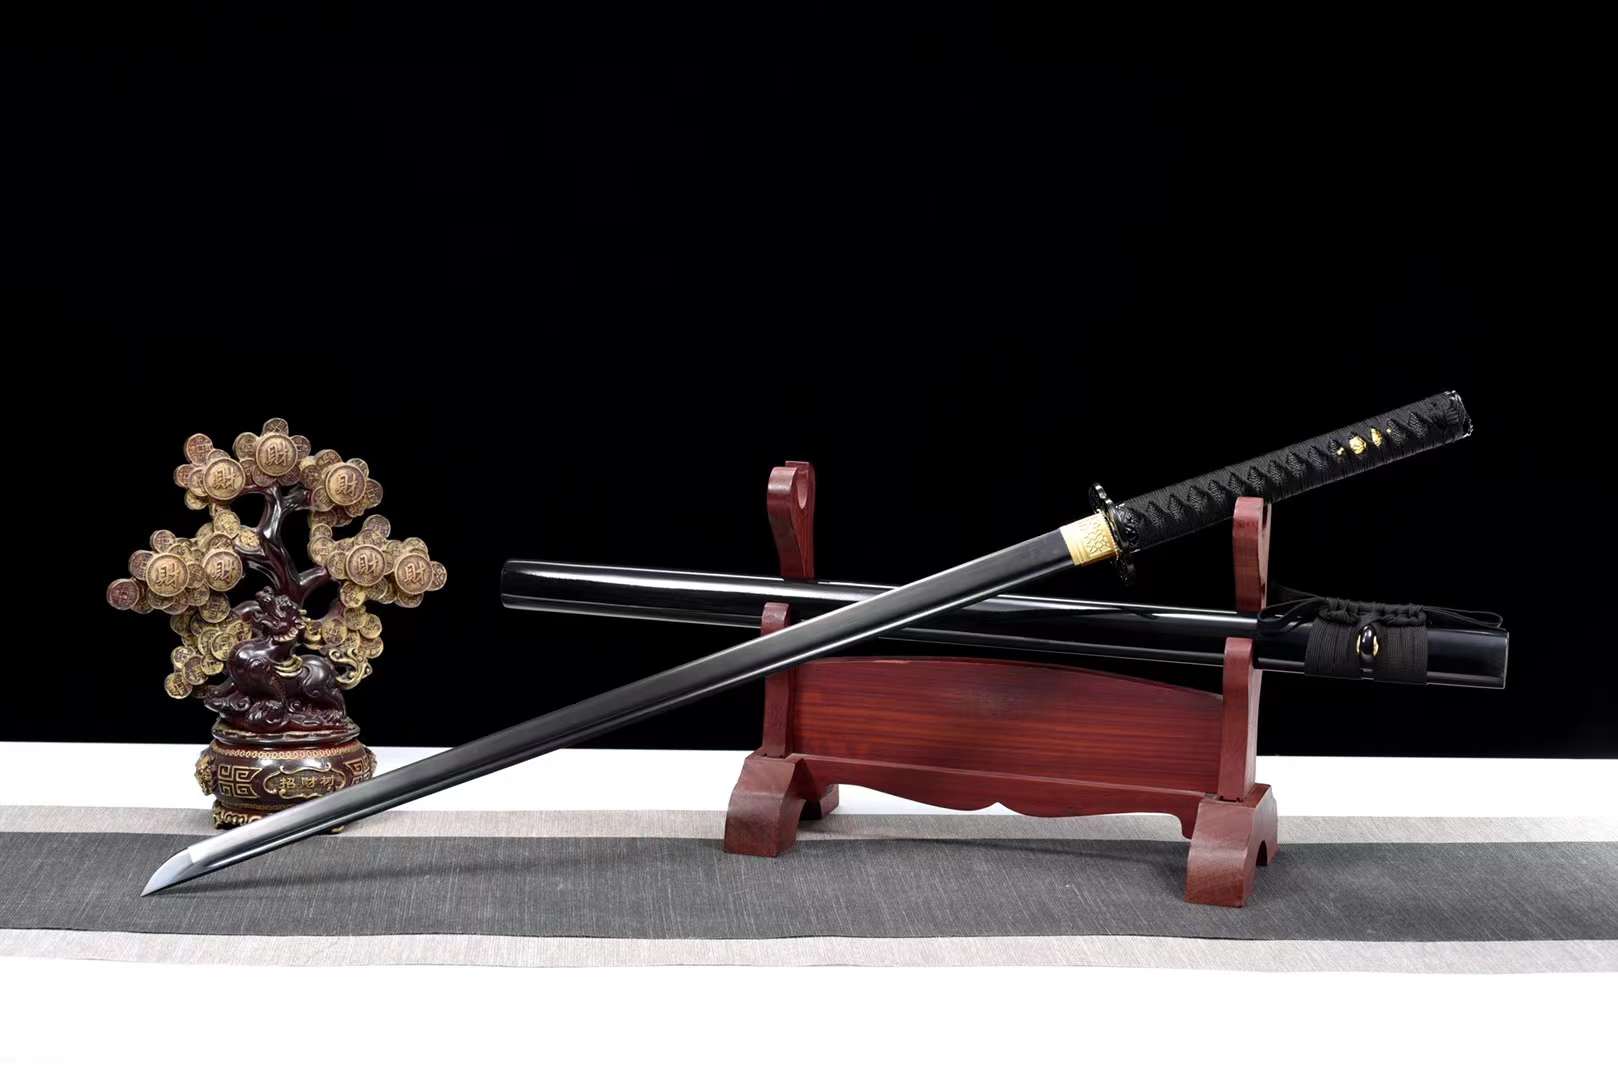 The Doku Ekitai Handmade Ninjato Carbon Steel